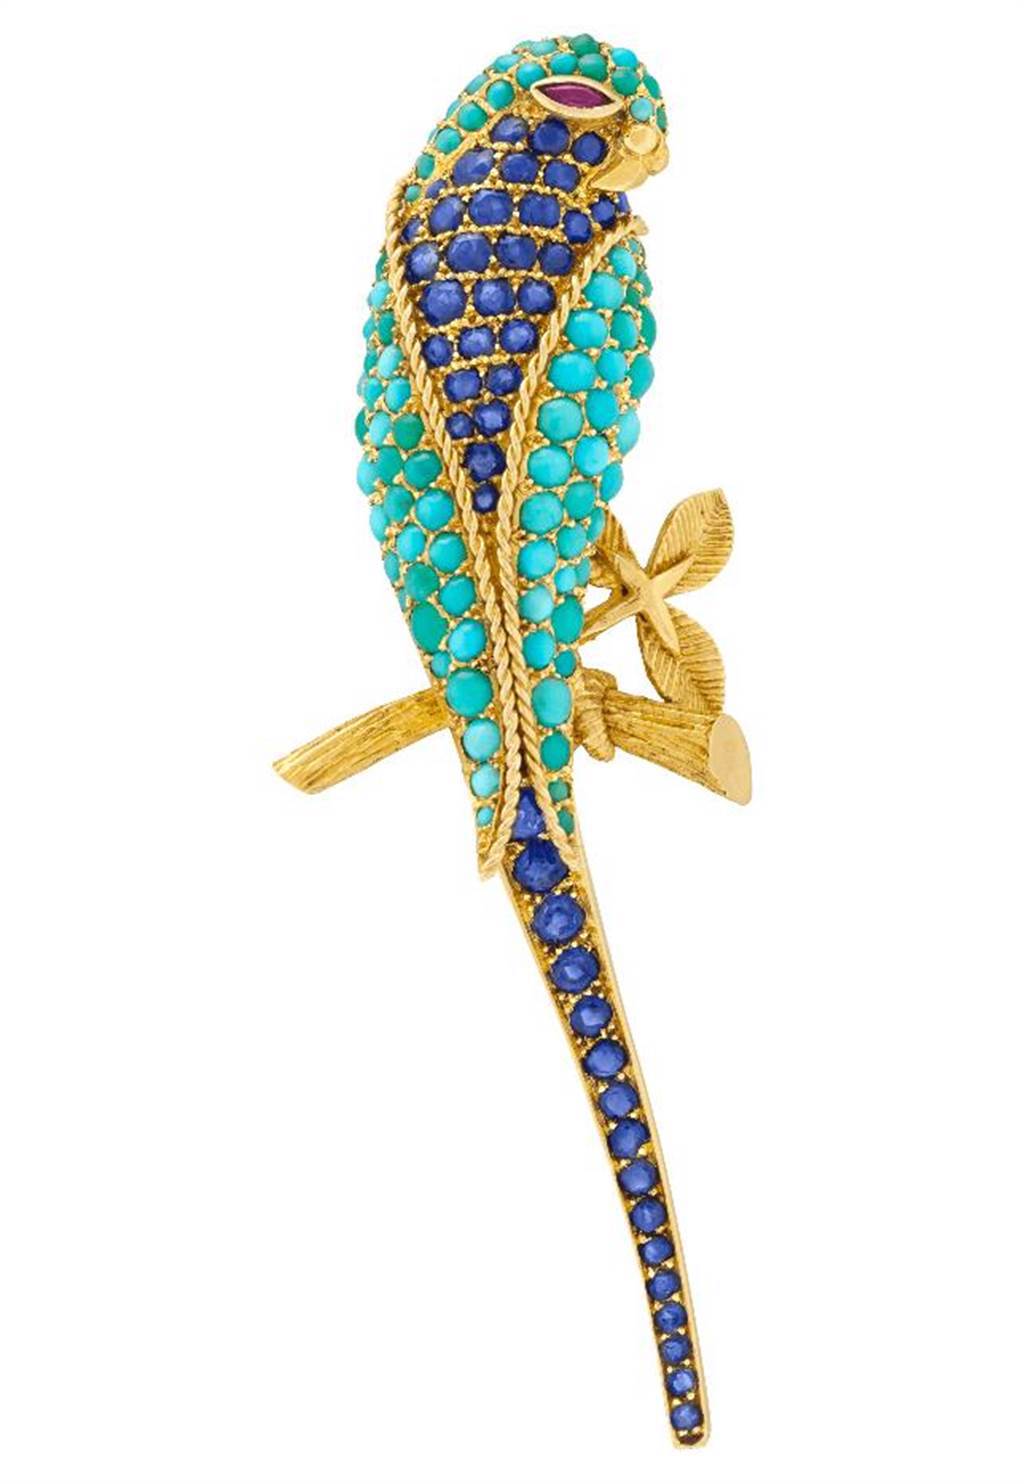 梵克雅寶Heritage典藏系列Perruche胸針，1962年，藍寶石、綠松石、紅寶石，283萬元。（Van Cleef & Arpels提供）